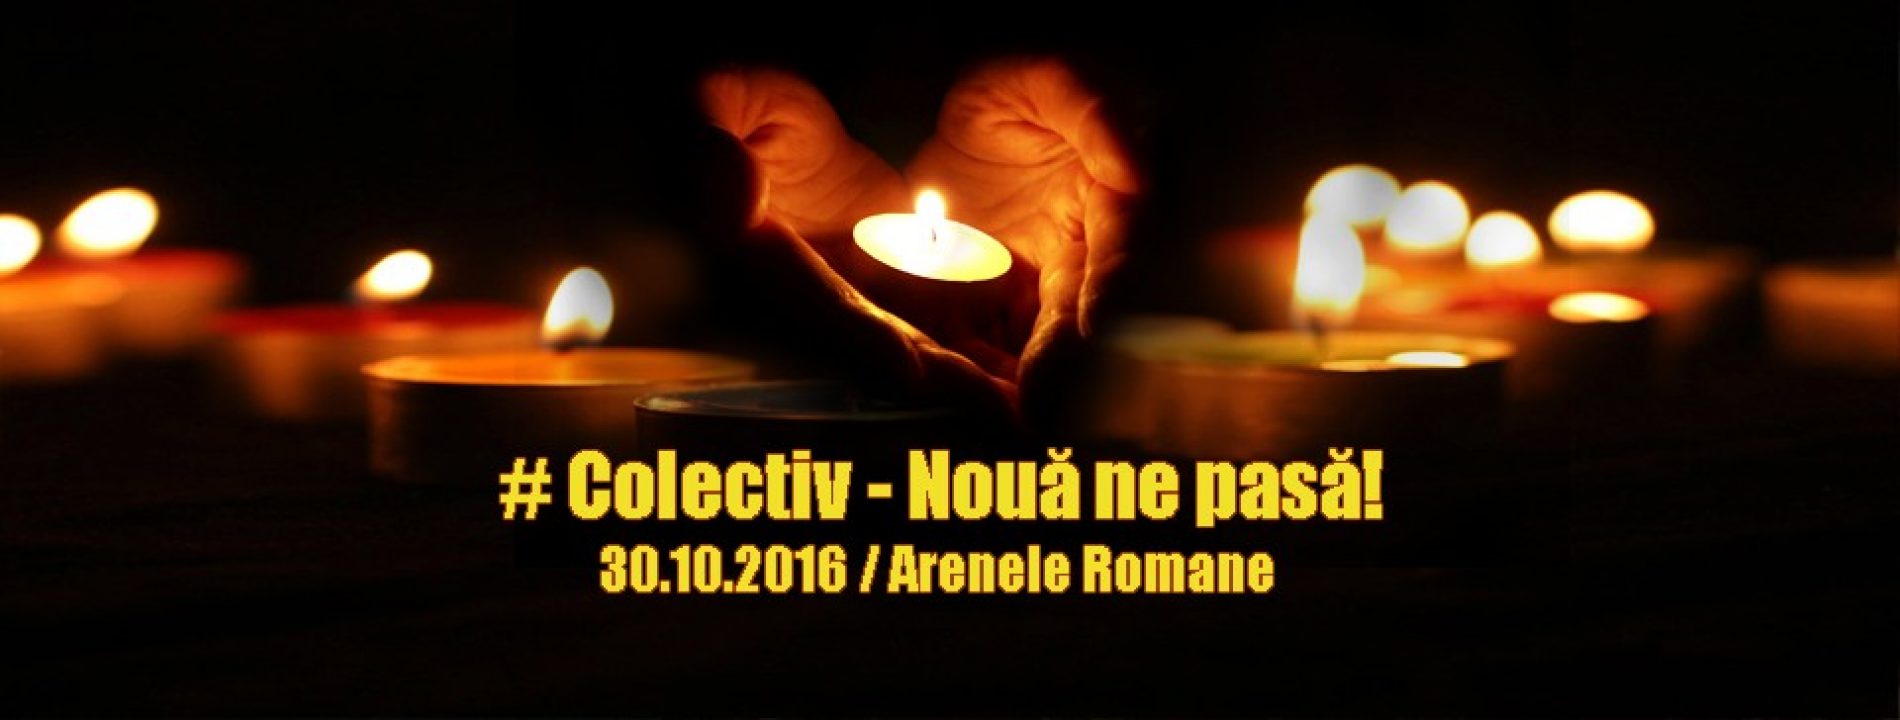 Colectiv – Noua ne pasa! (concert caritabil) pe 30 octombrie la Arenele Romane